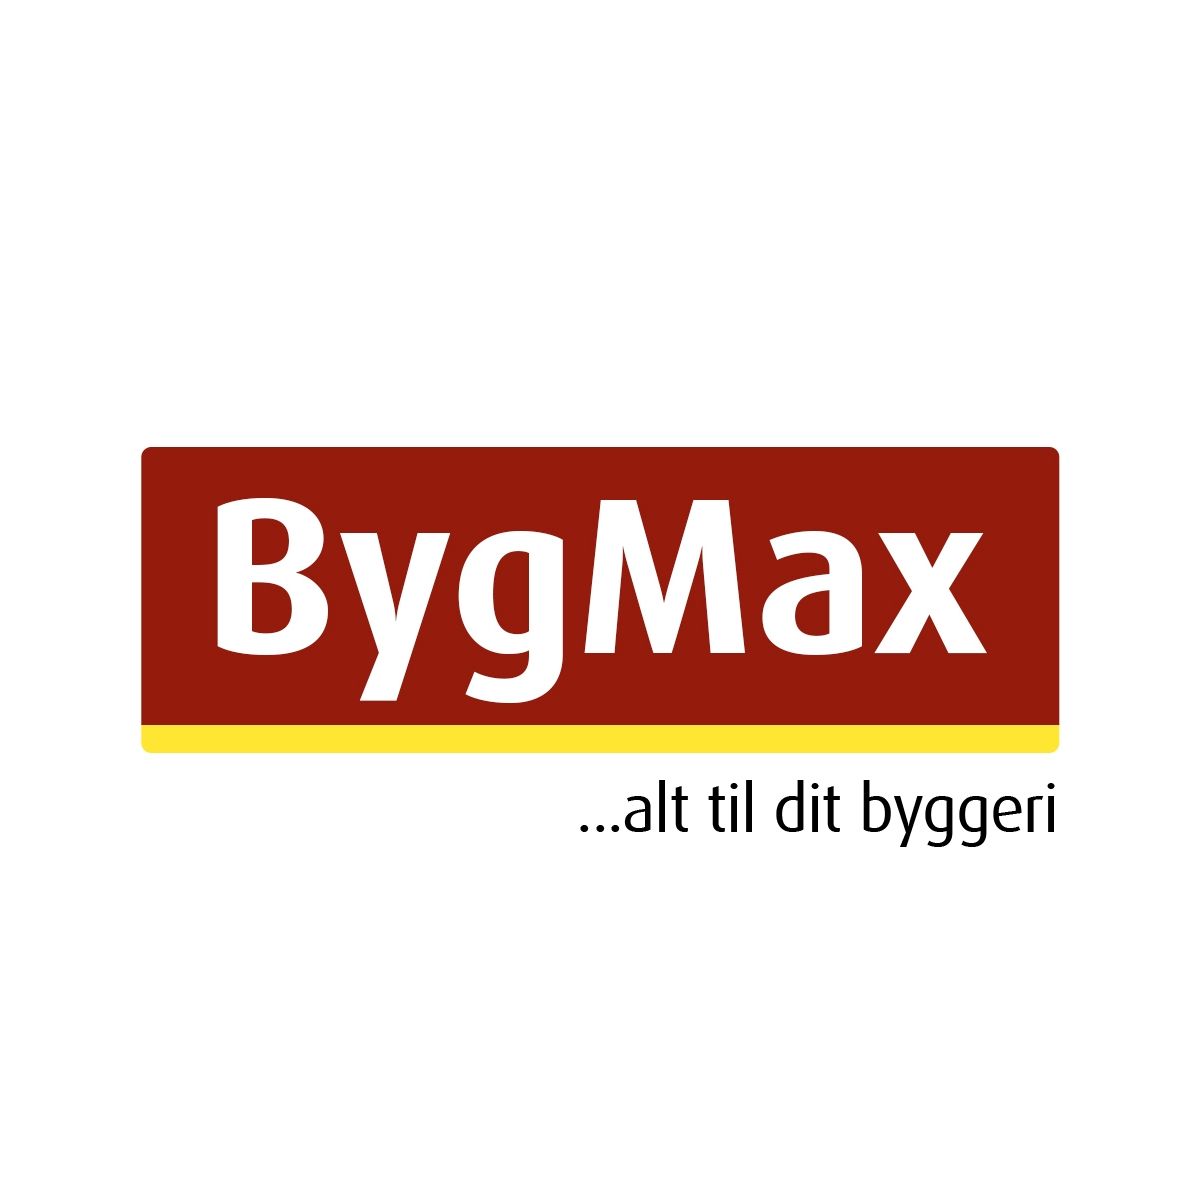 Bygmax